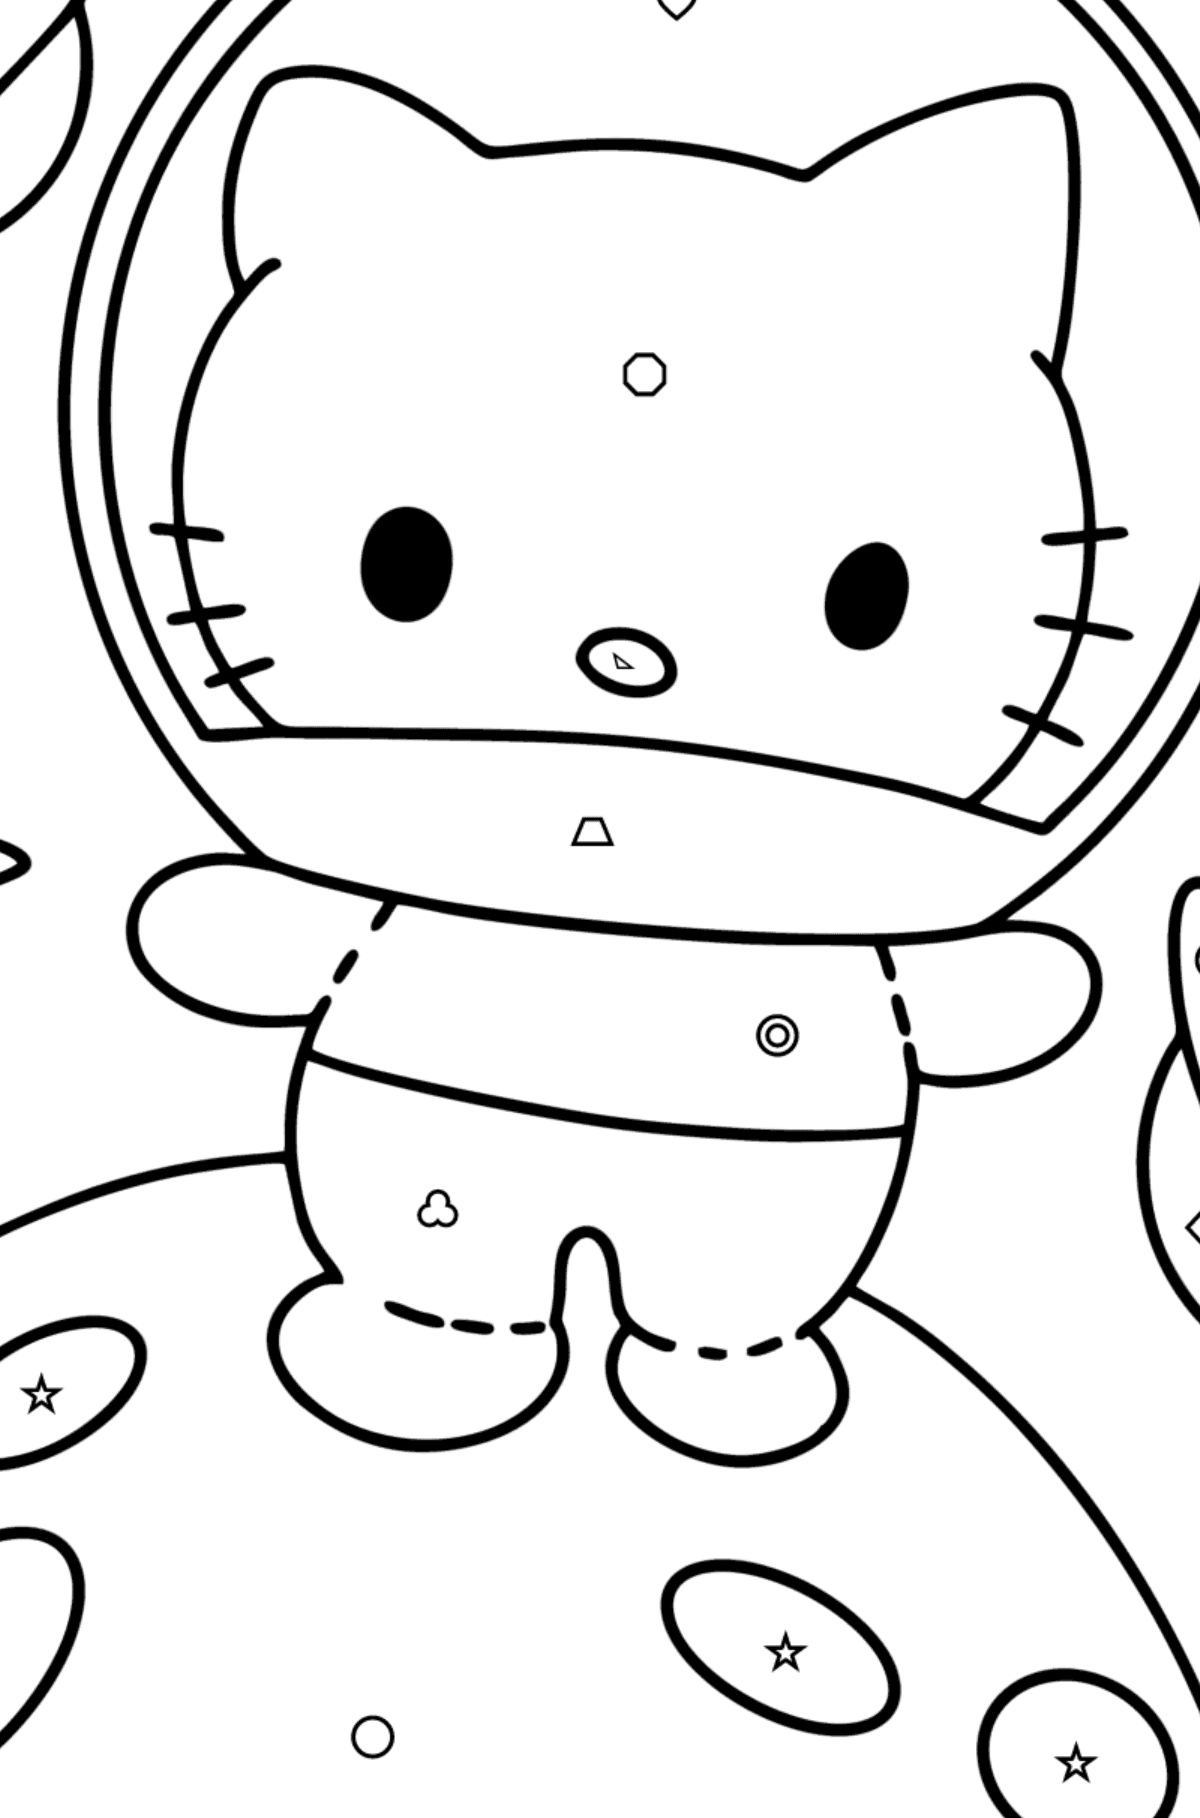 Tegning til fargelegging Hello Kitty astronaut - Fargelegge etter geometriske former for barn